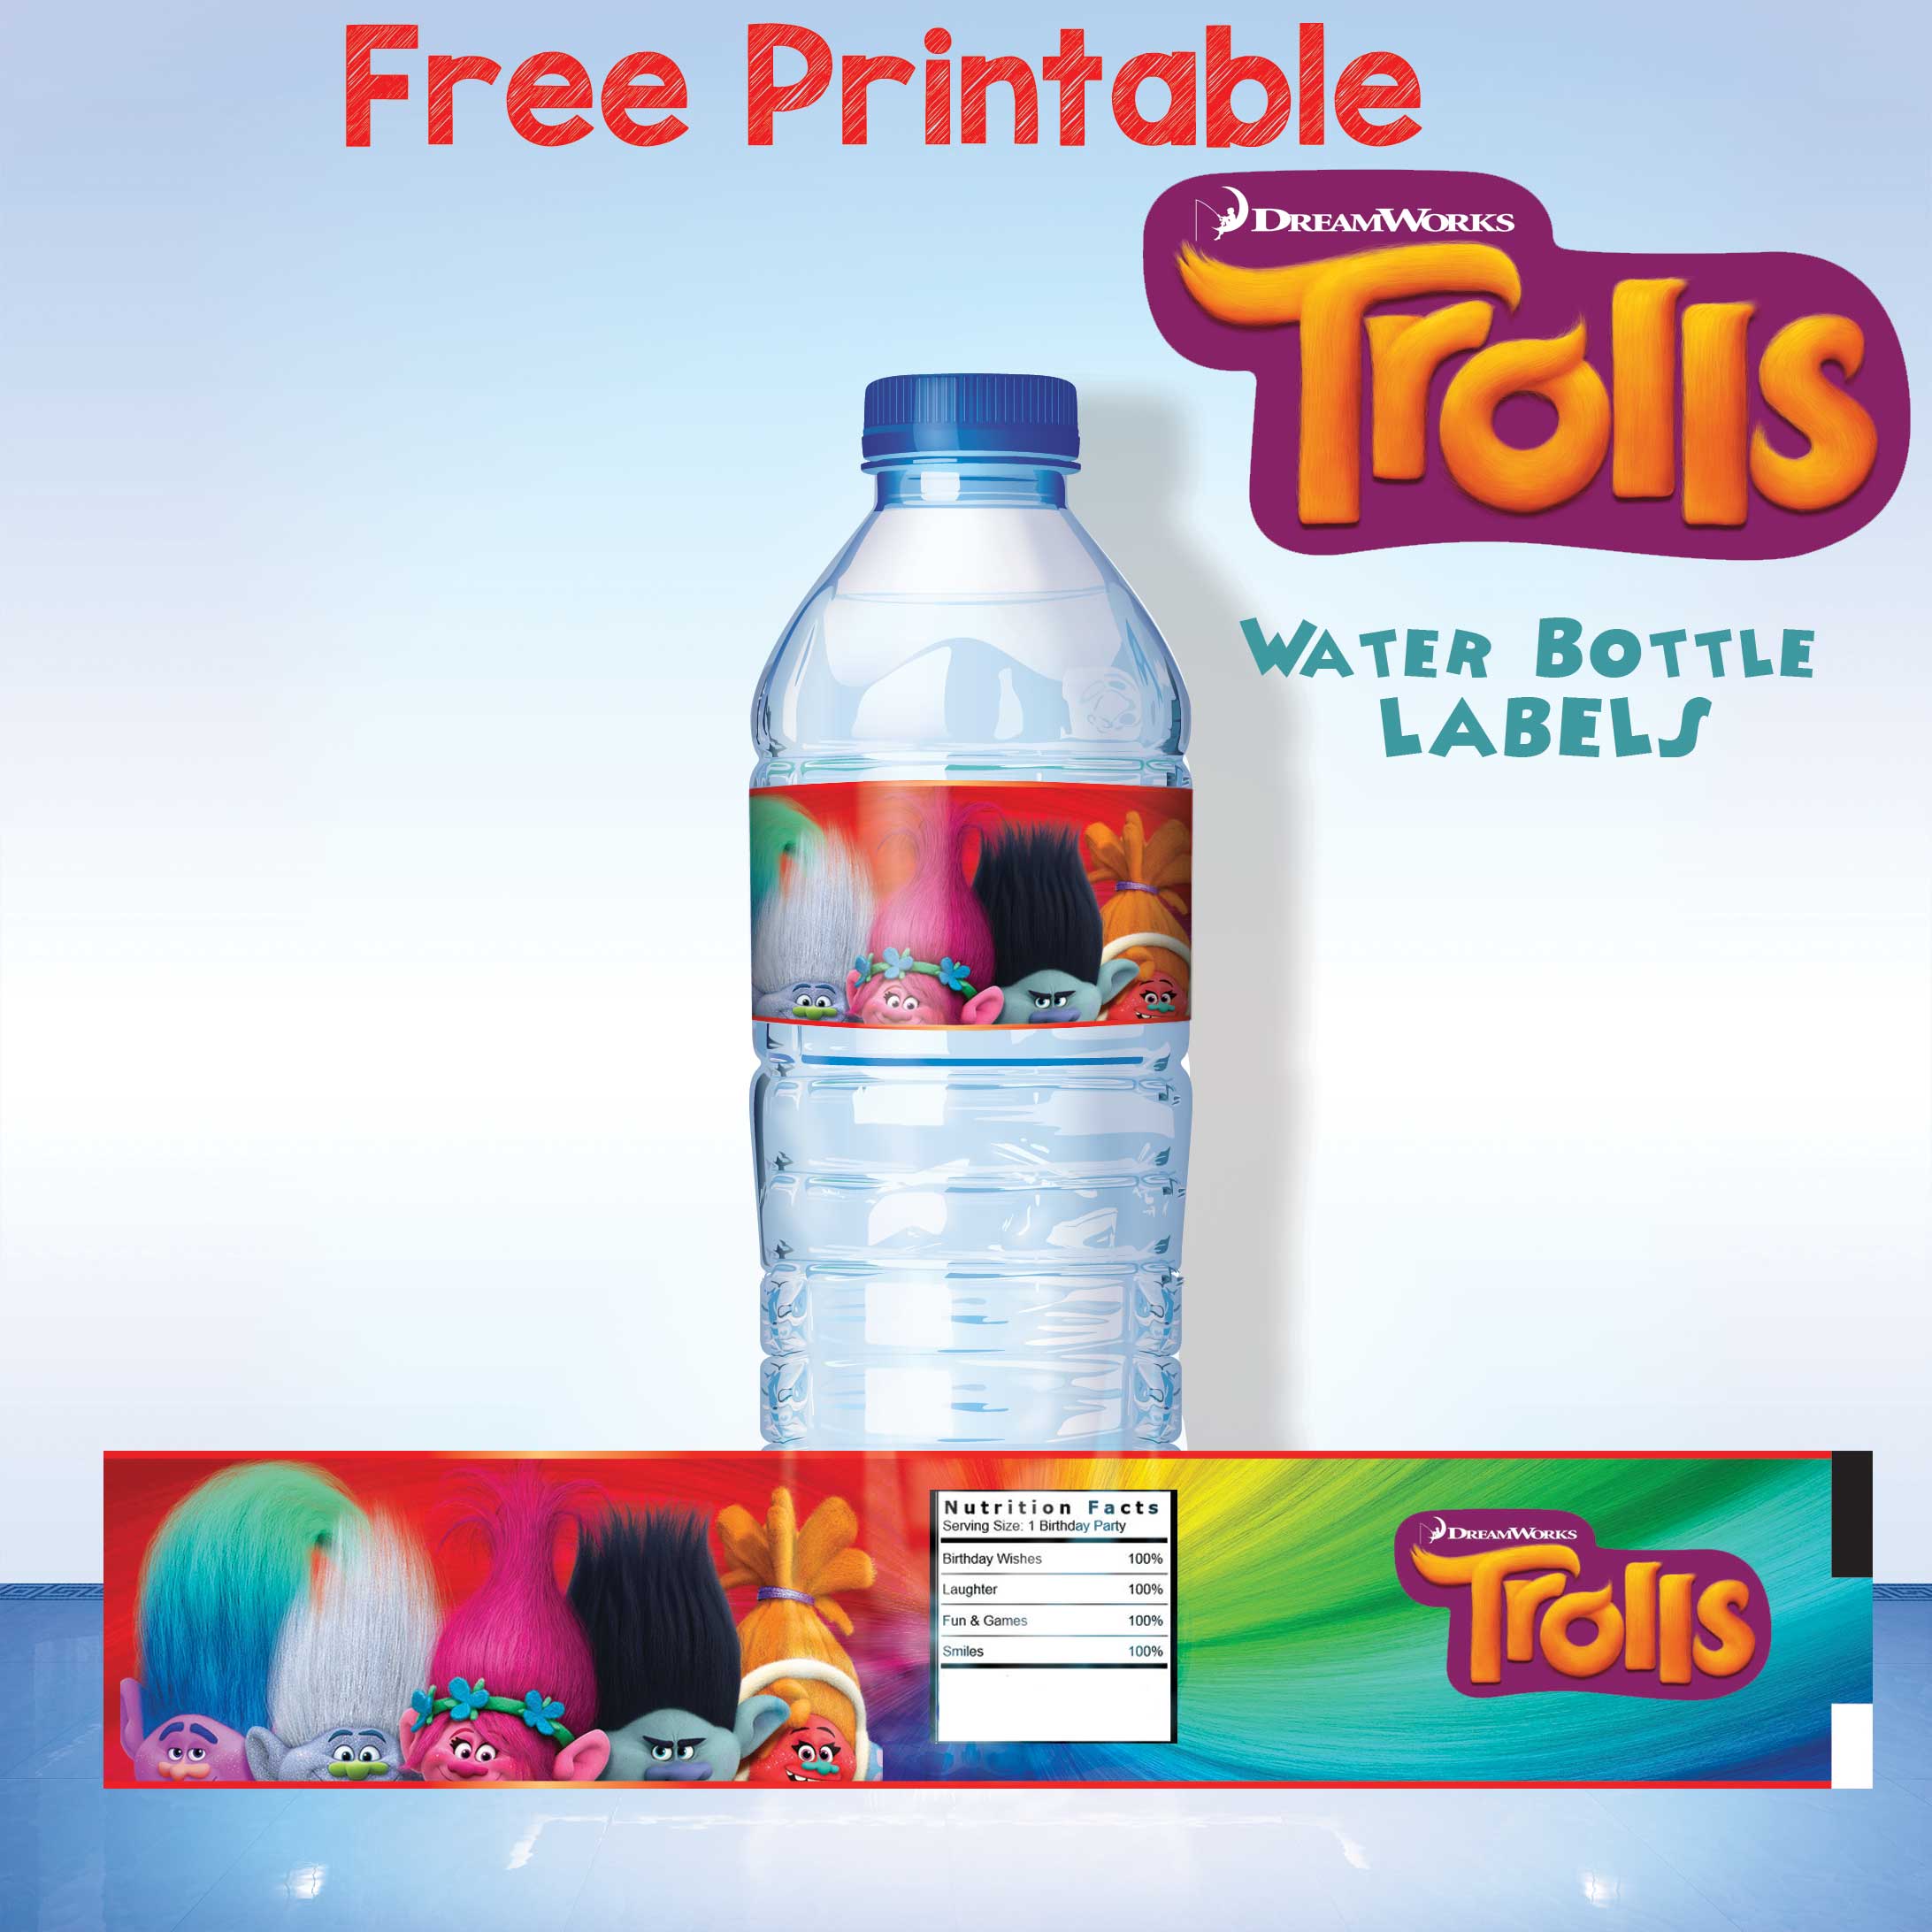 FREE-Printable-Trolls-Water-Bottle-Labels---Applied